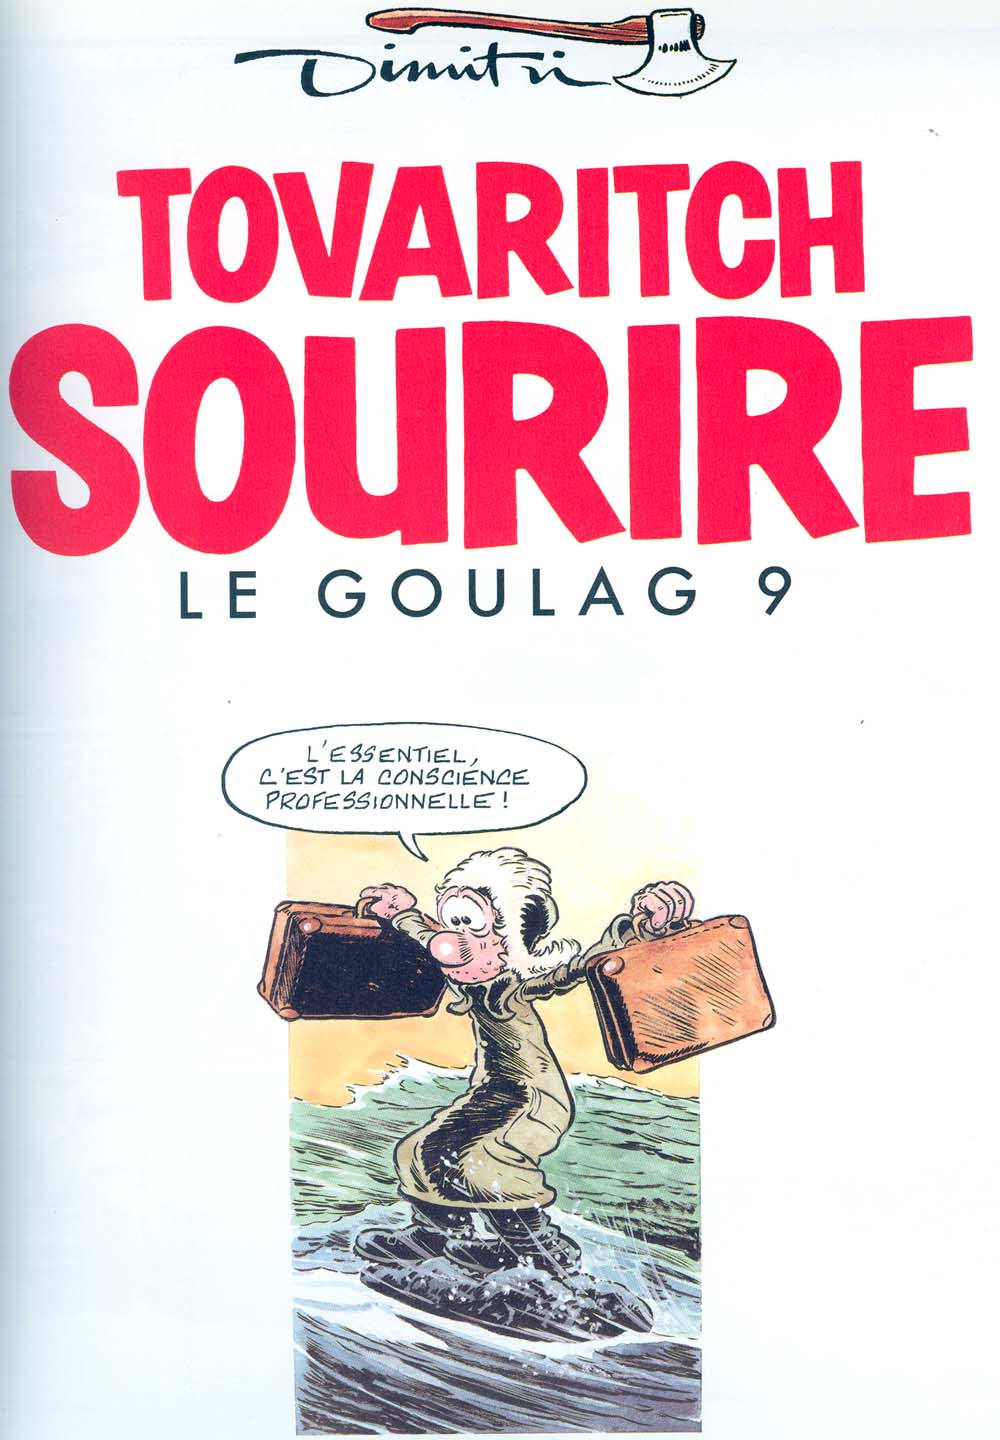 Le Goulag - 09 - Tovaritch Sourire numero d'image 1